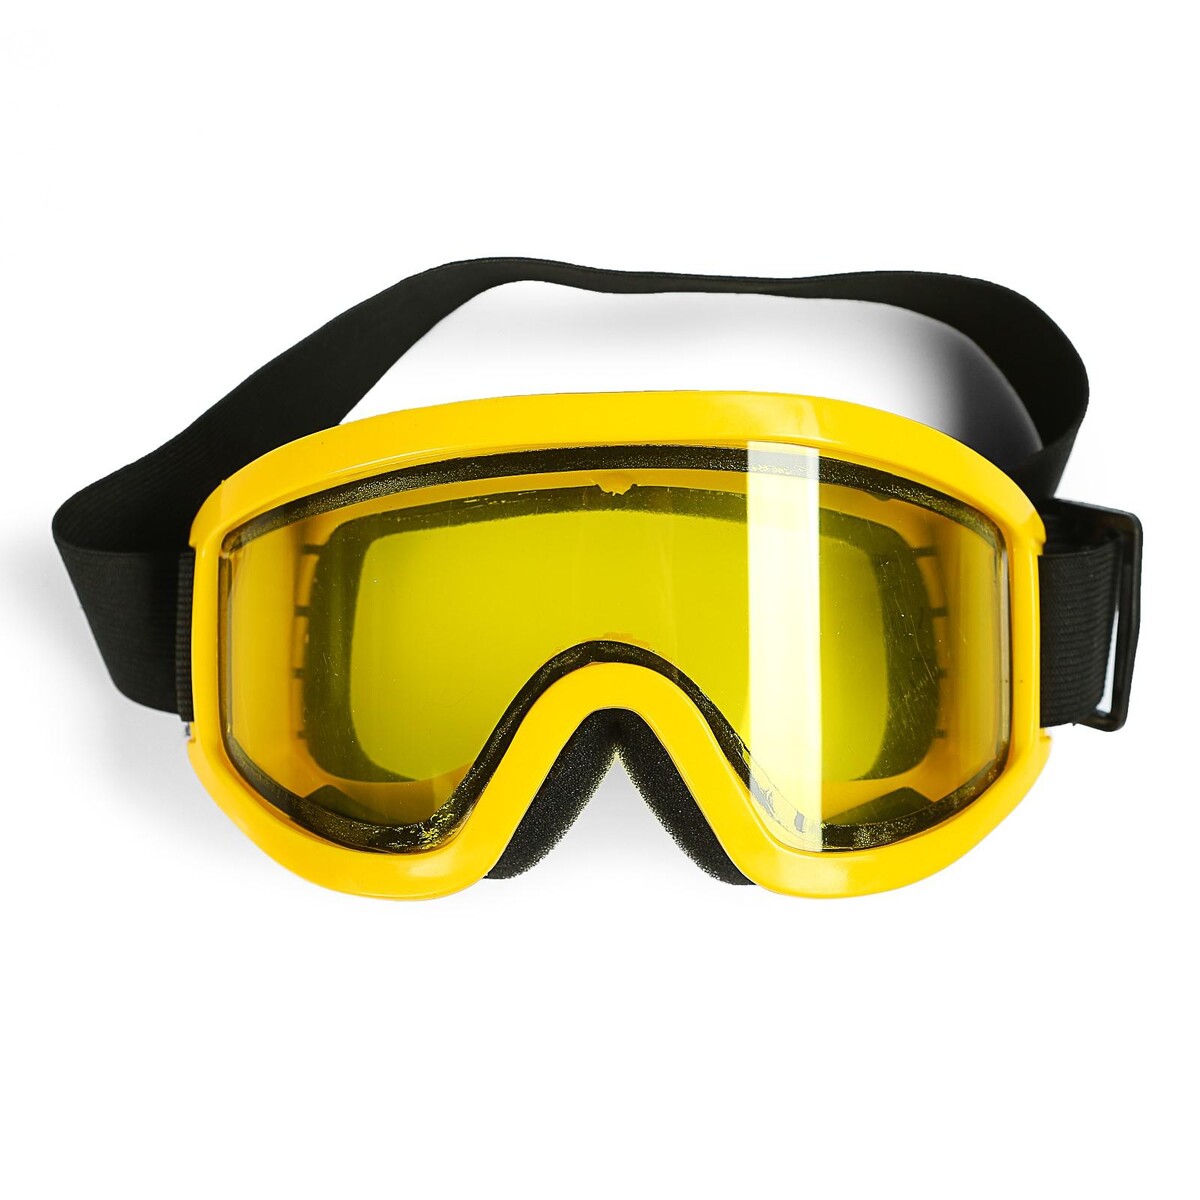 Очки-маска для езды на мототехнике, стекло двухслойное желтое, цвет желтый очки маска для езды на мототехнике разборные стекло оранжевый хром